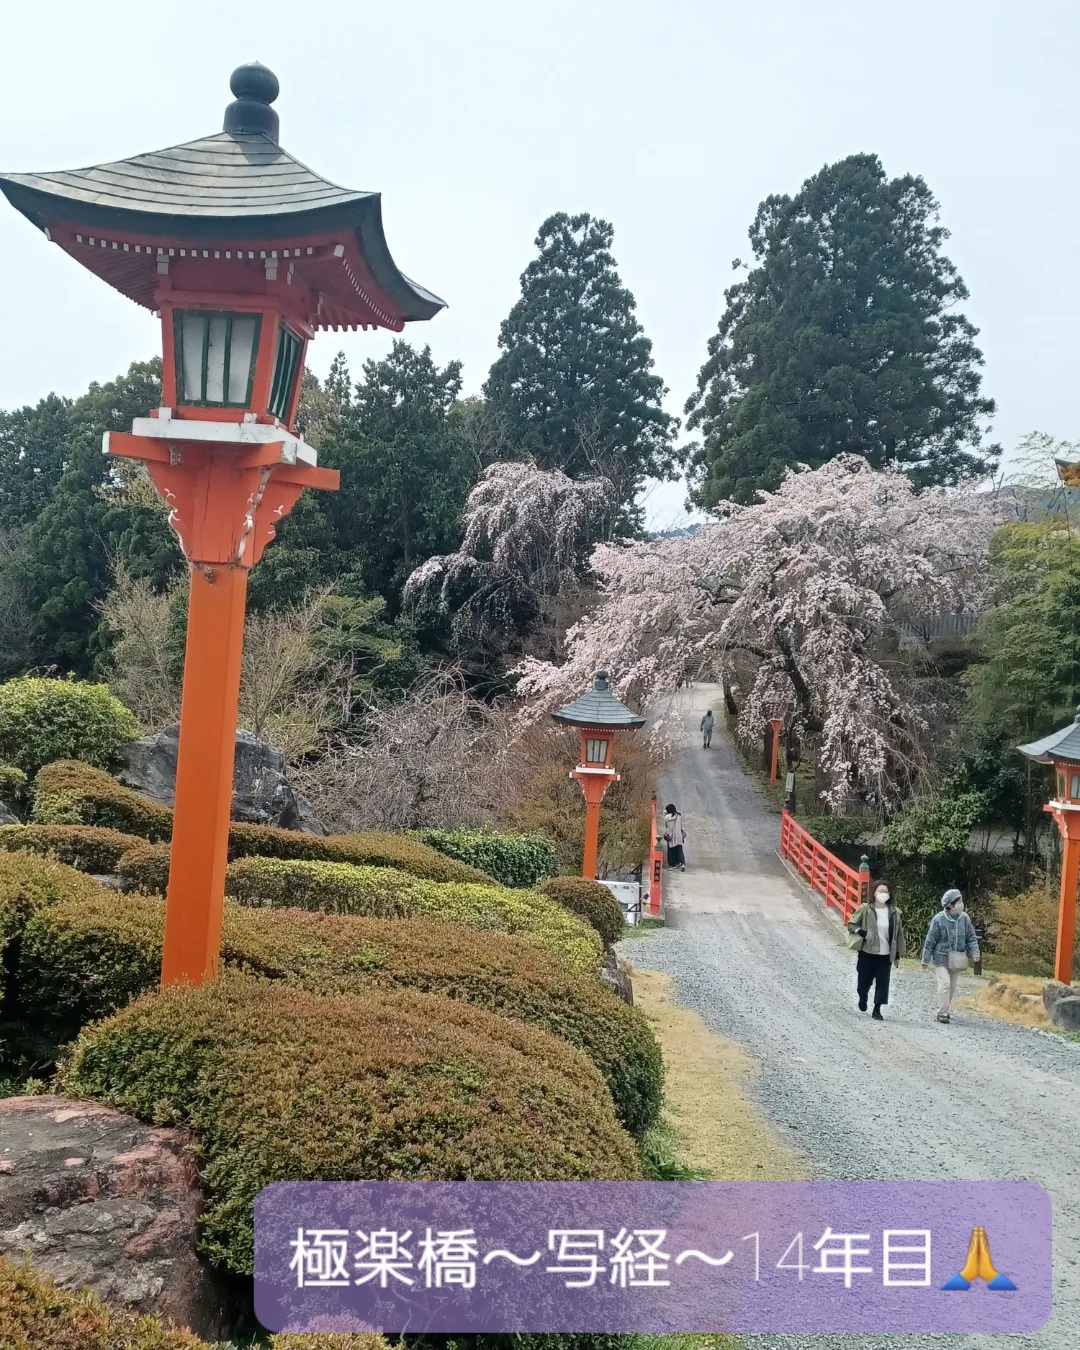 正法寺さんの桜🌸の季節に写経をするのも14回になりました。元気を頂く桜🌸と正法寺さんに感謝でございます💗